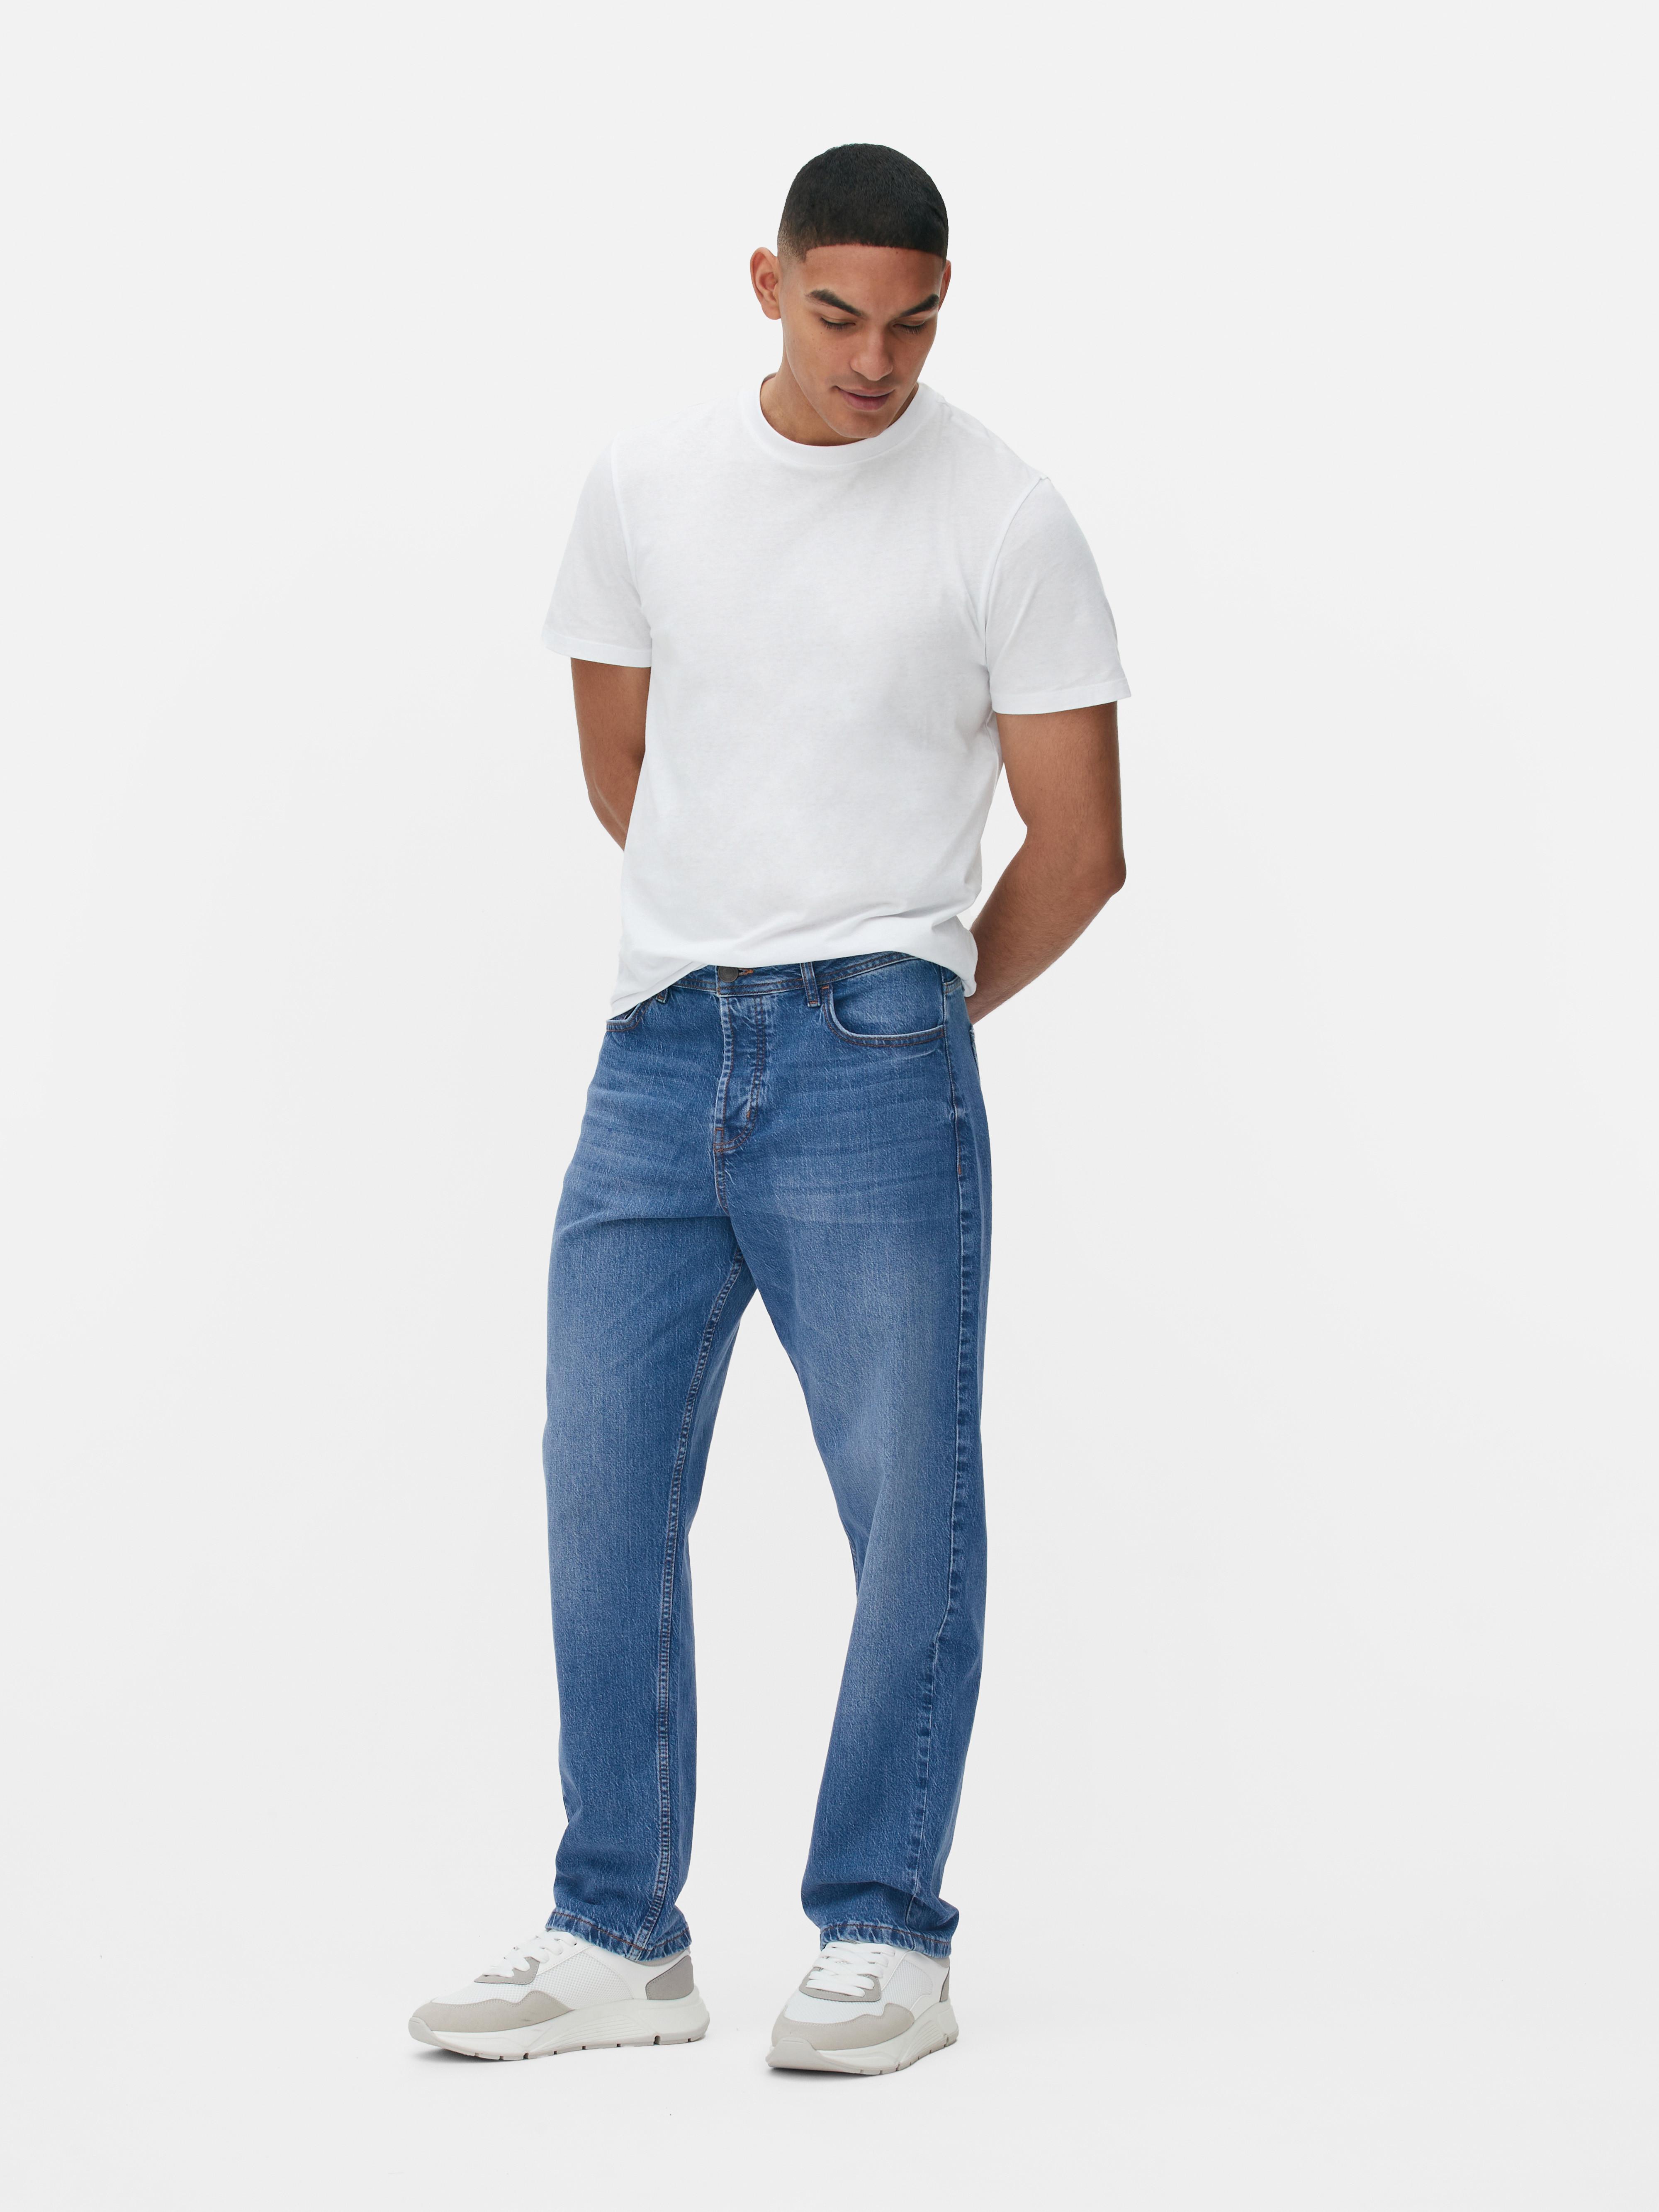 Jeans denim dalla vestibilità comoda